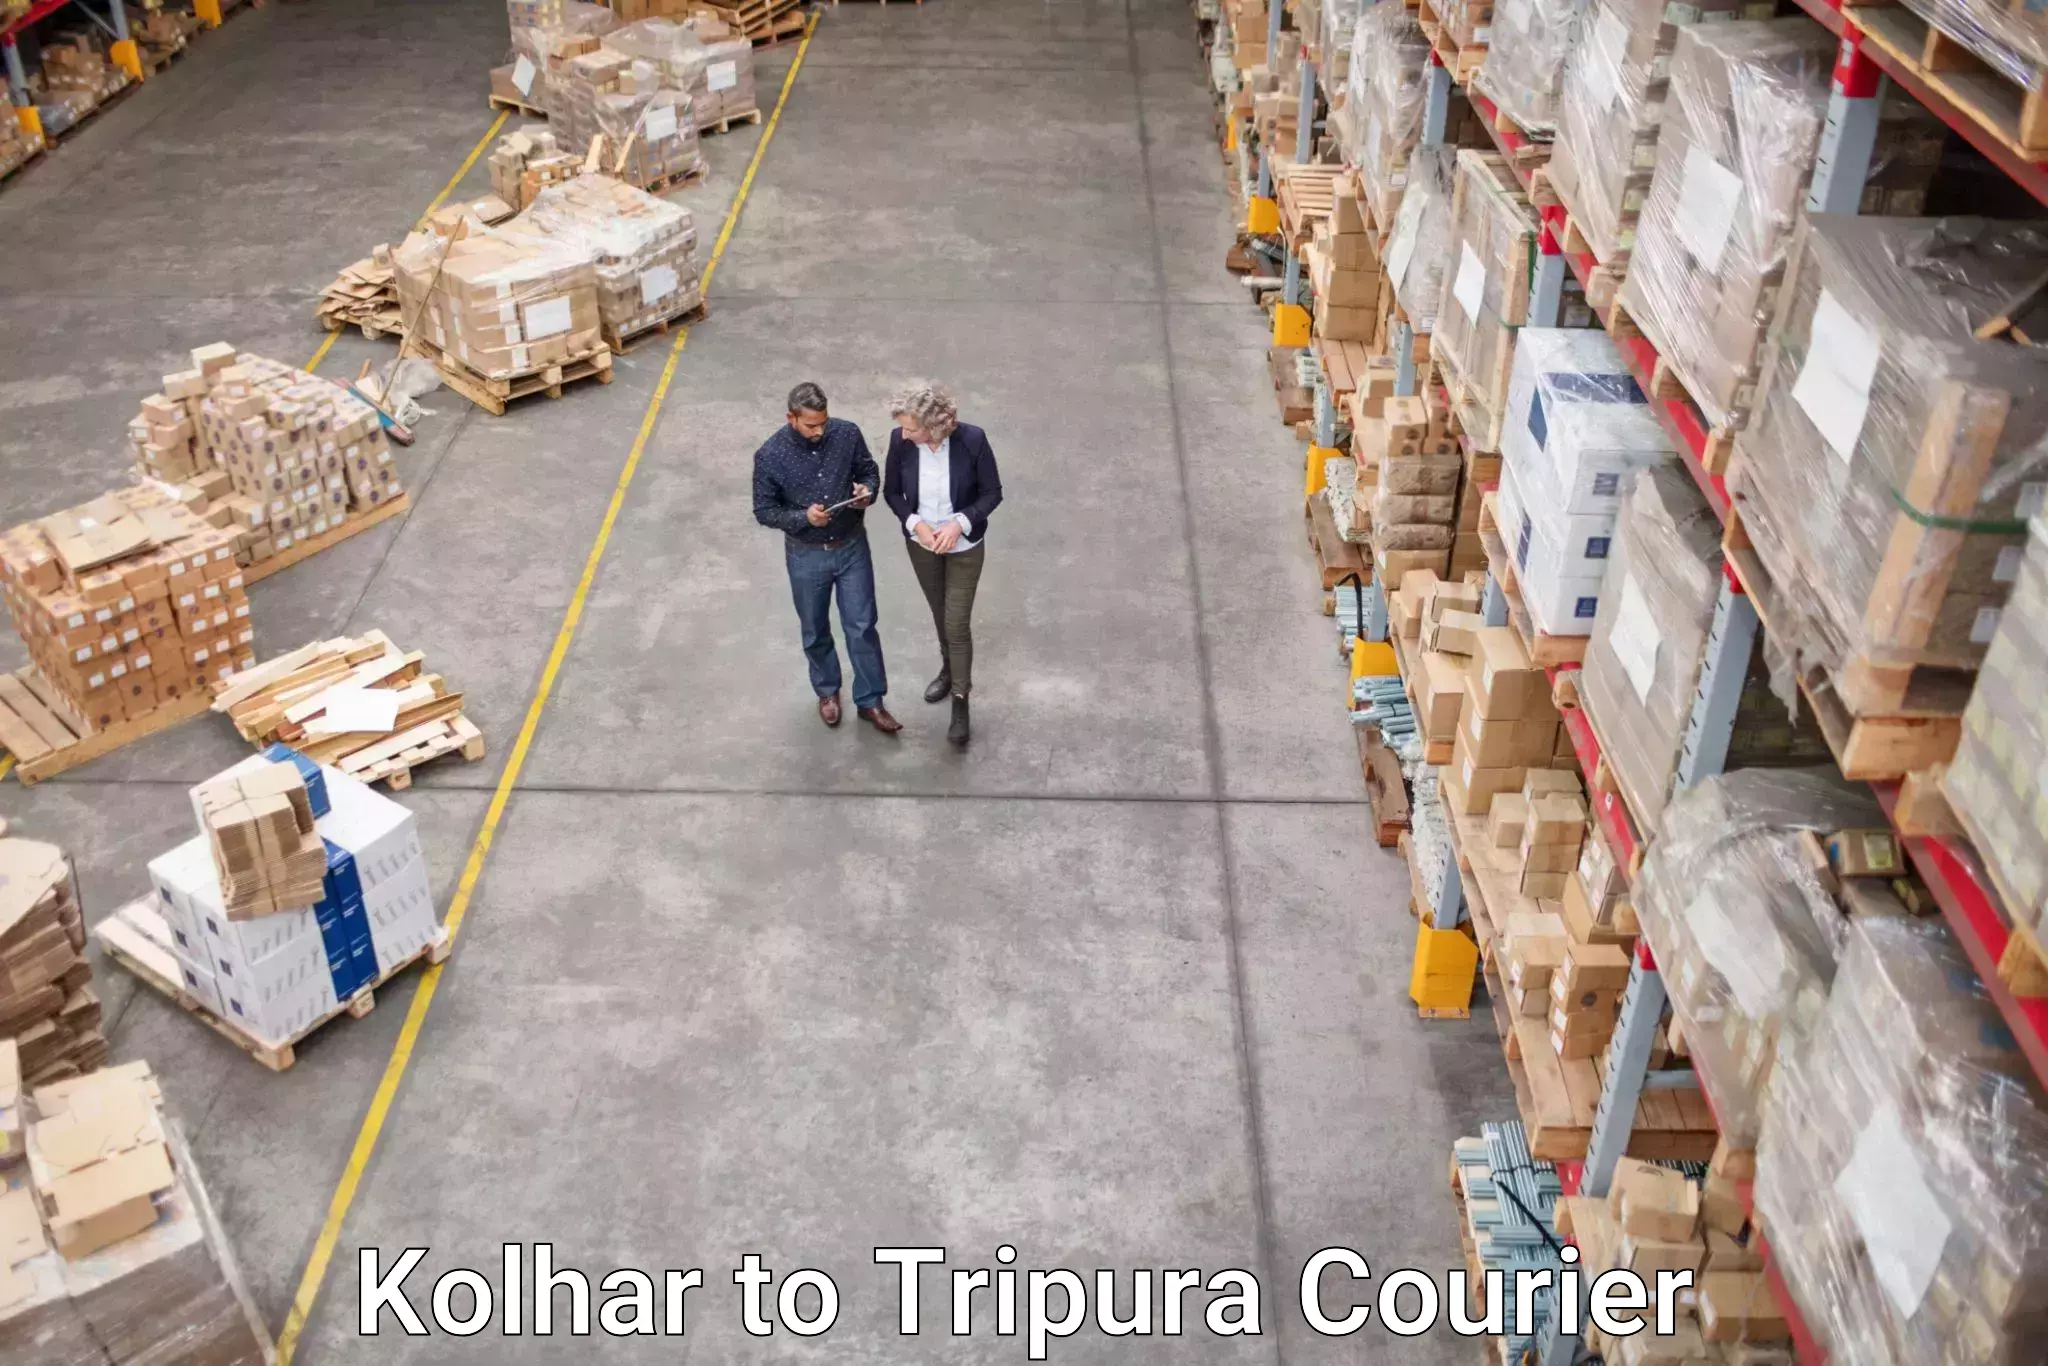 Premium courier services Kolhar to Dharmanagar